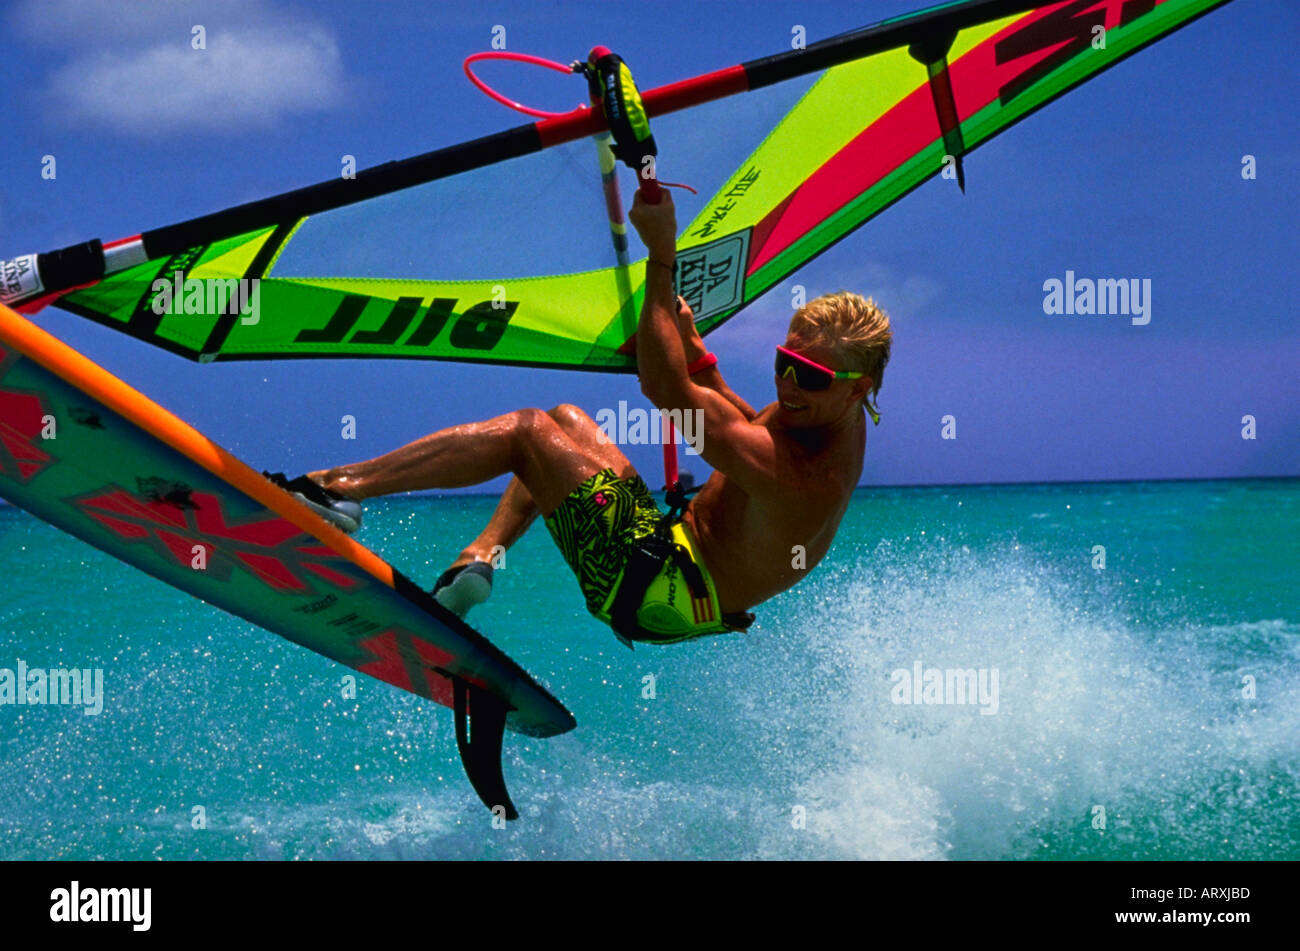 Windsurf saltando le onde al largo dell'isola di Aruba nelle Antille olandesi nei Caraibi meridionali Foto Stock